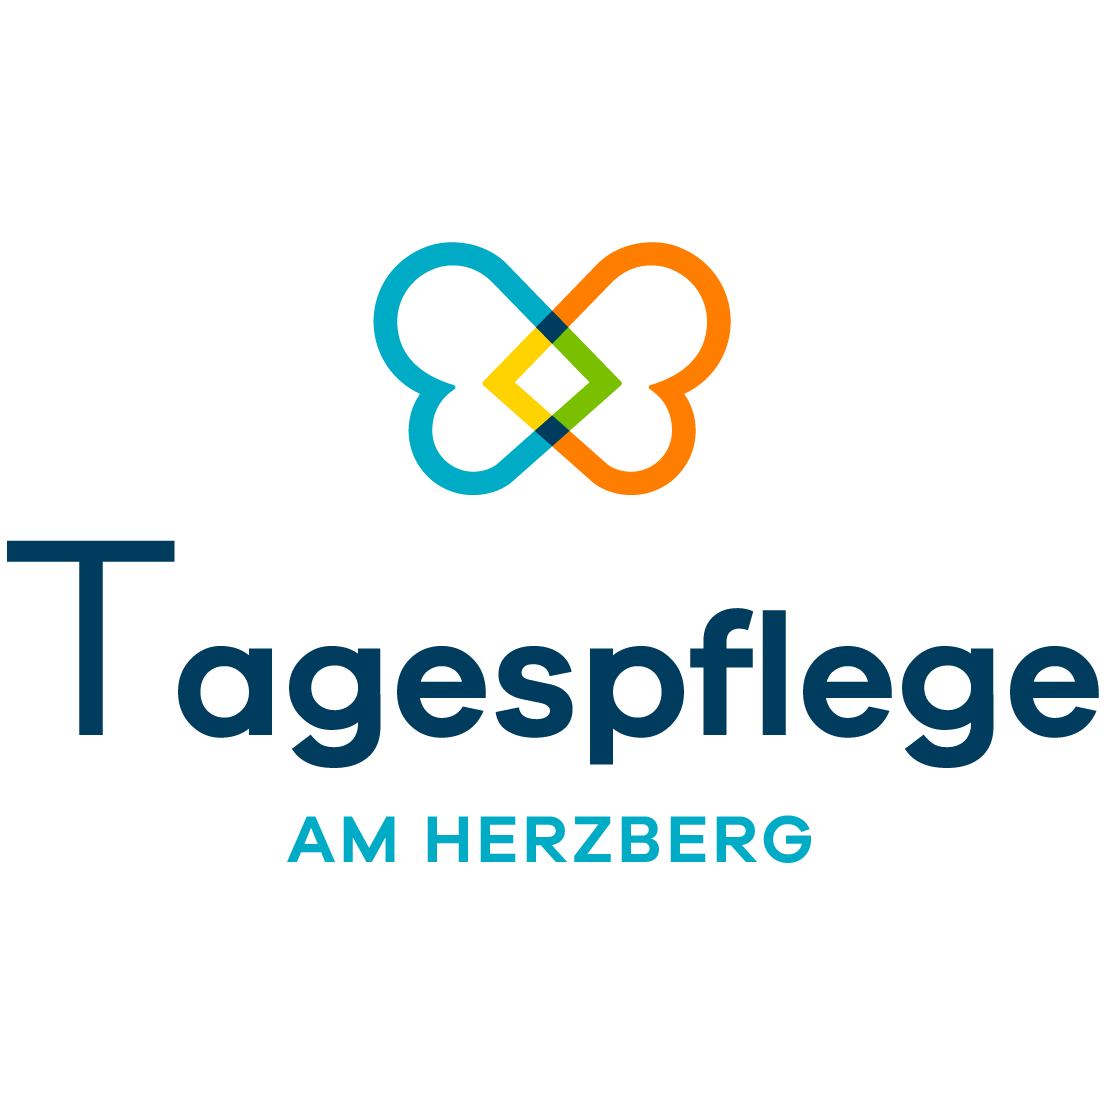 Tagespflege am Herzberg in Peine - Logo